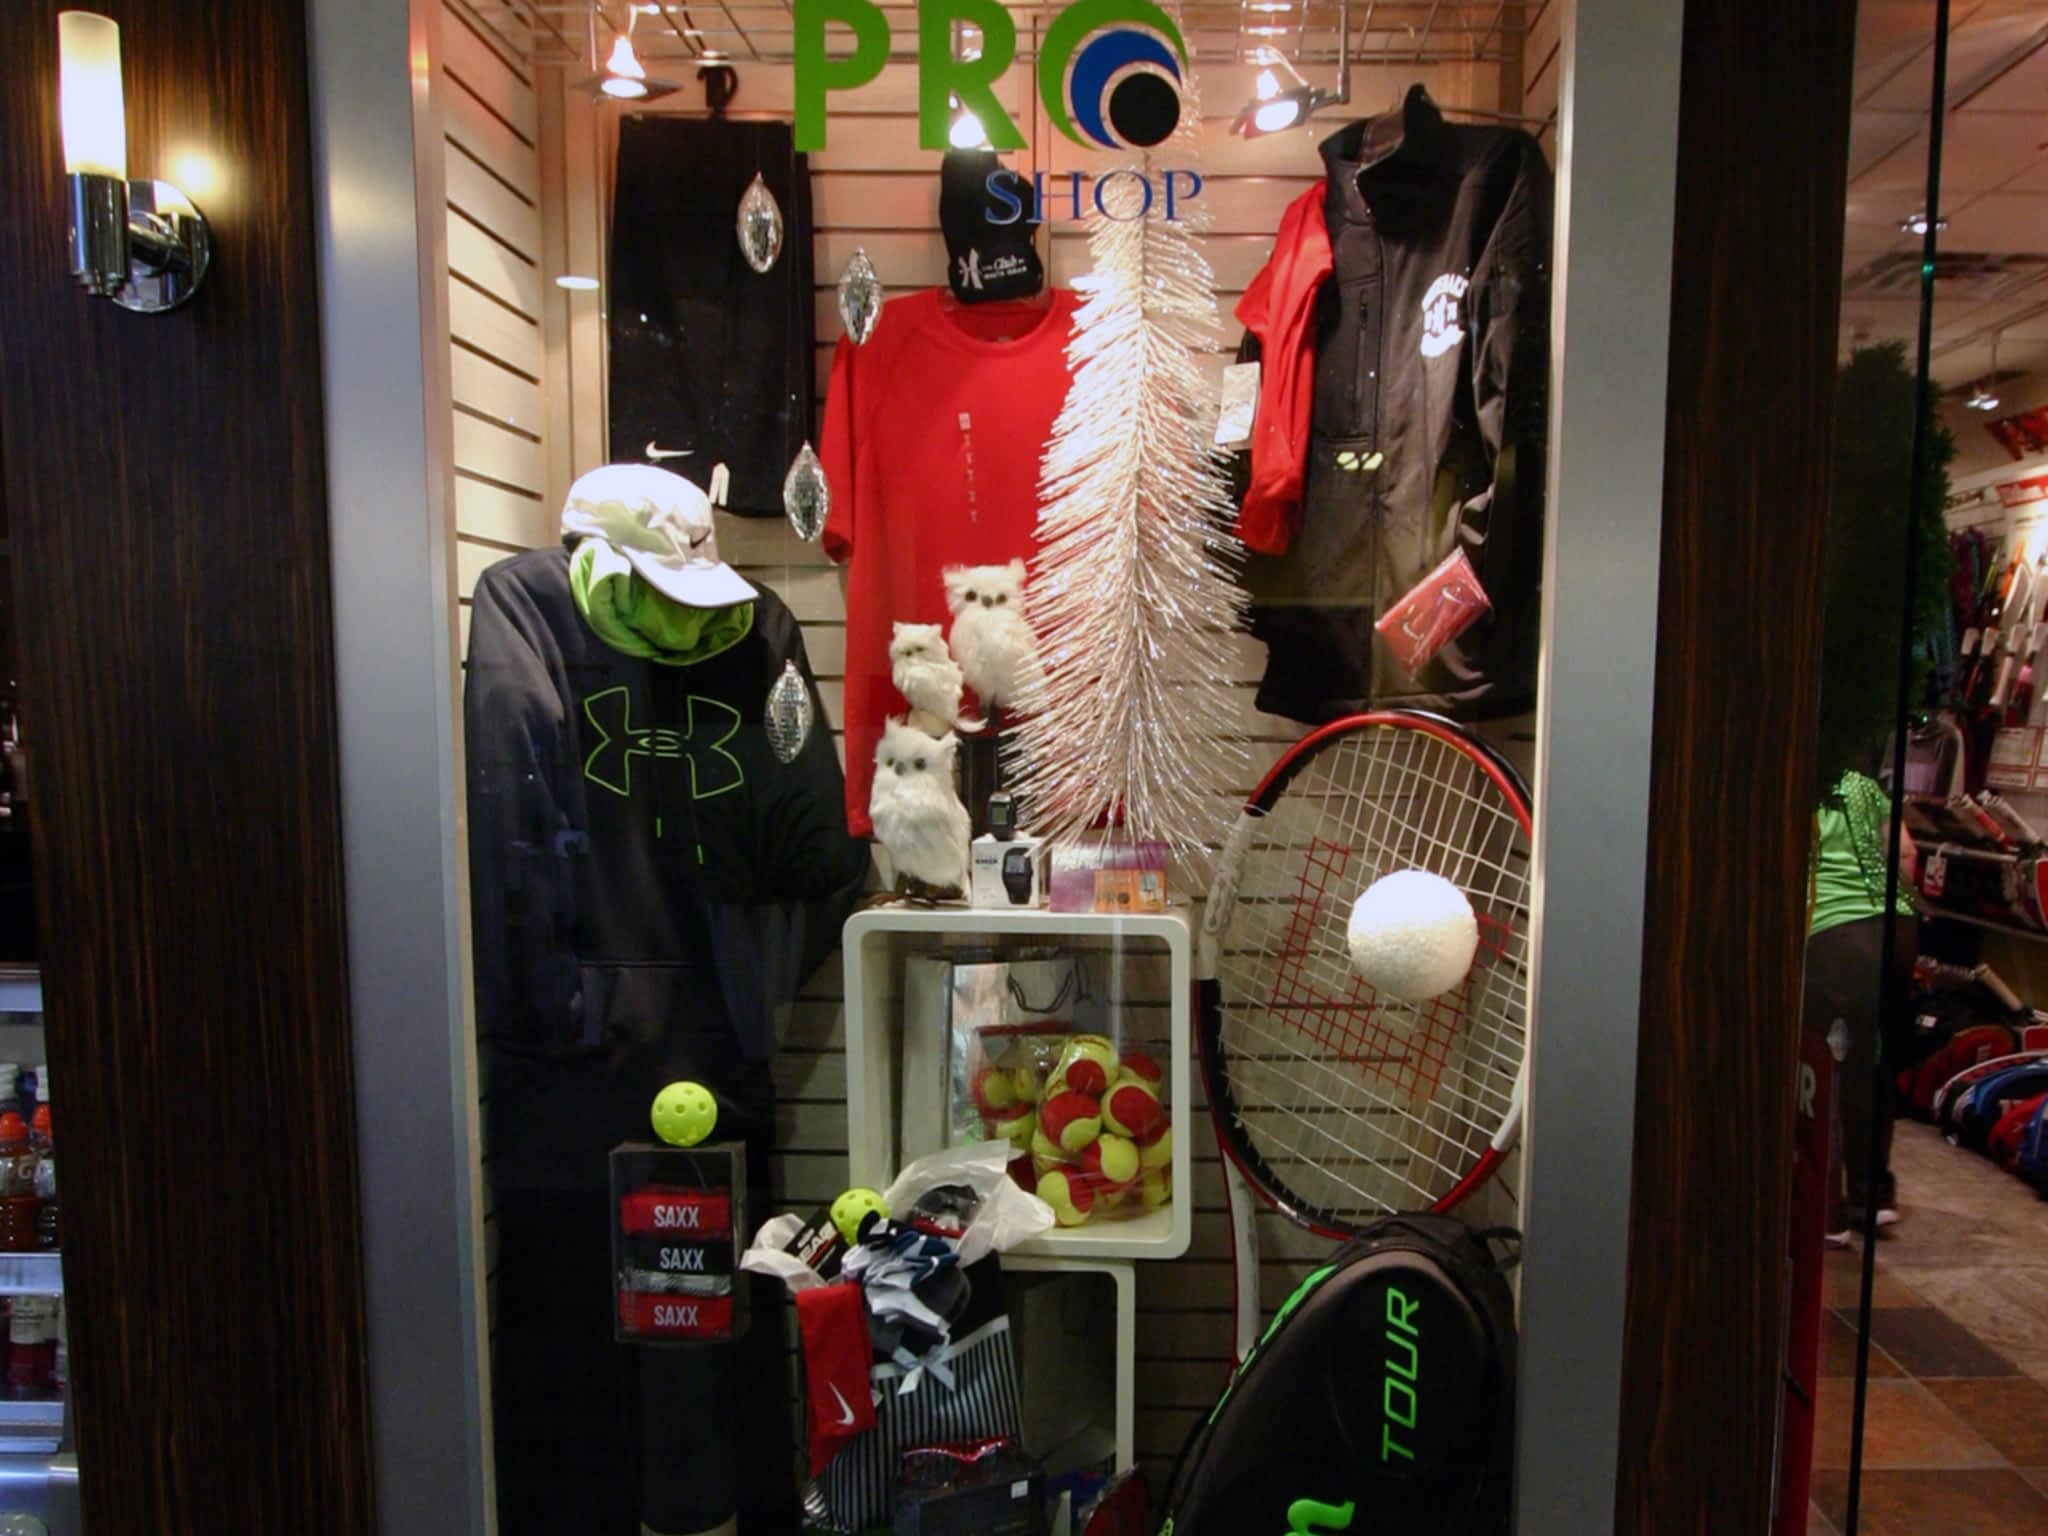 photo Pam's Pro Shop